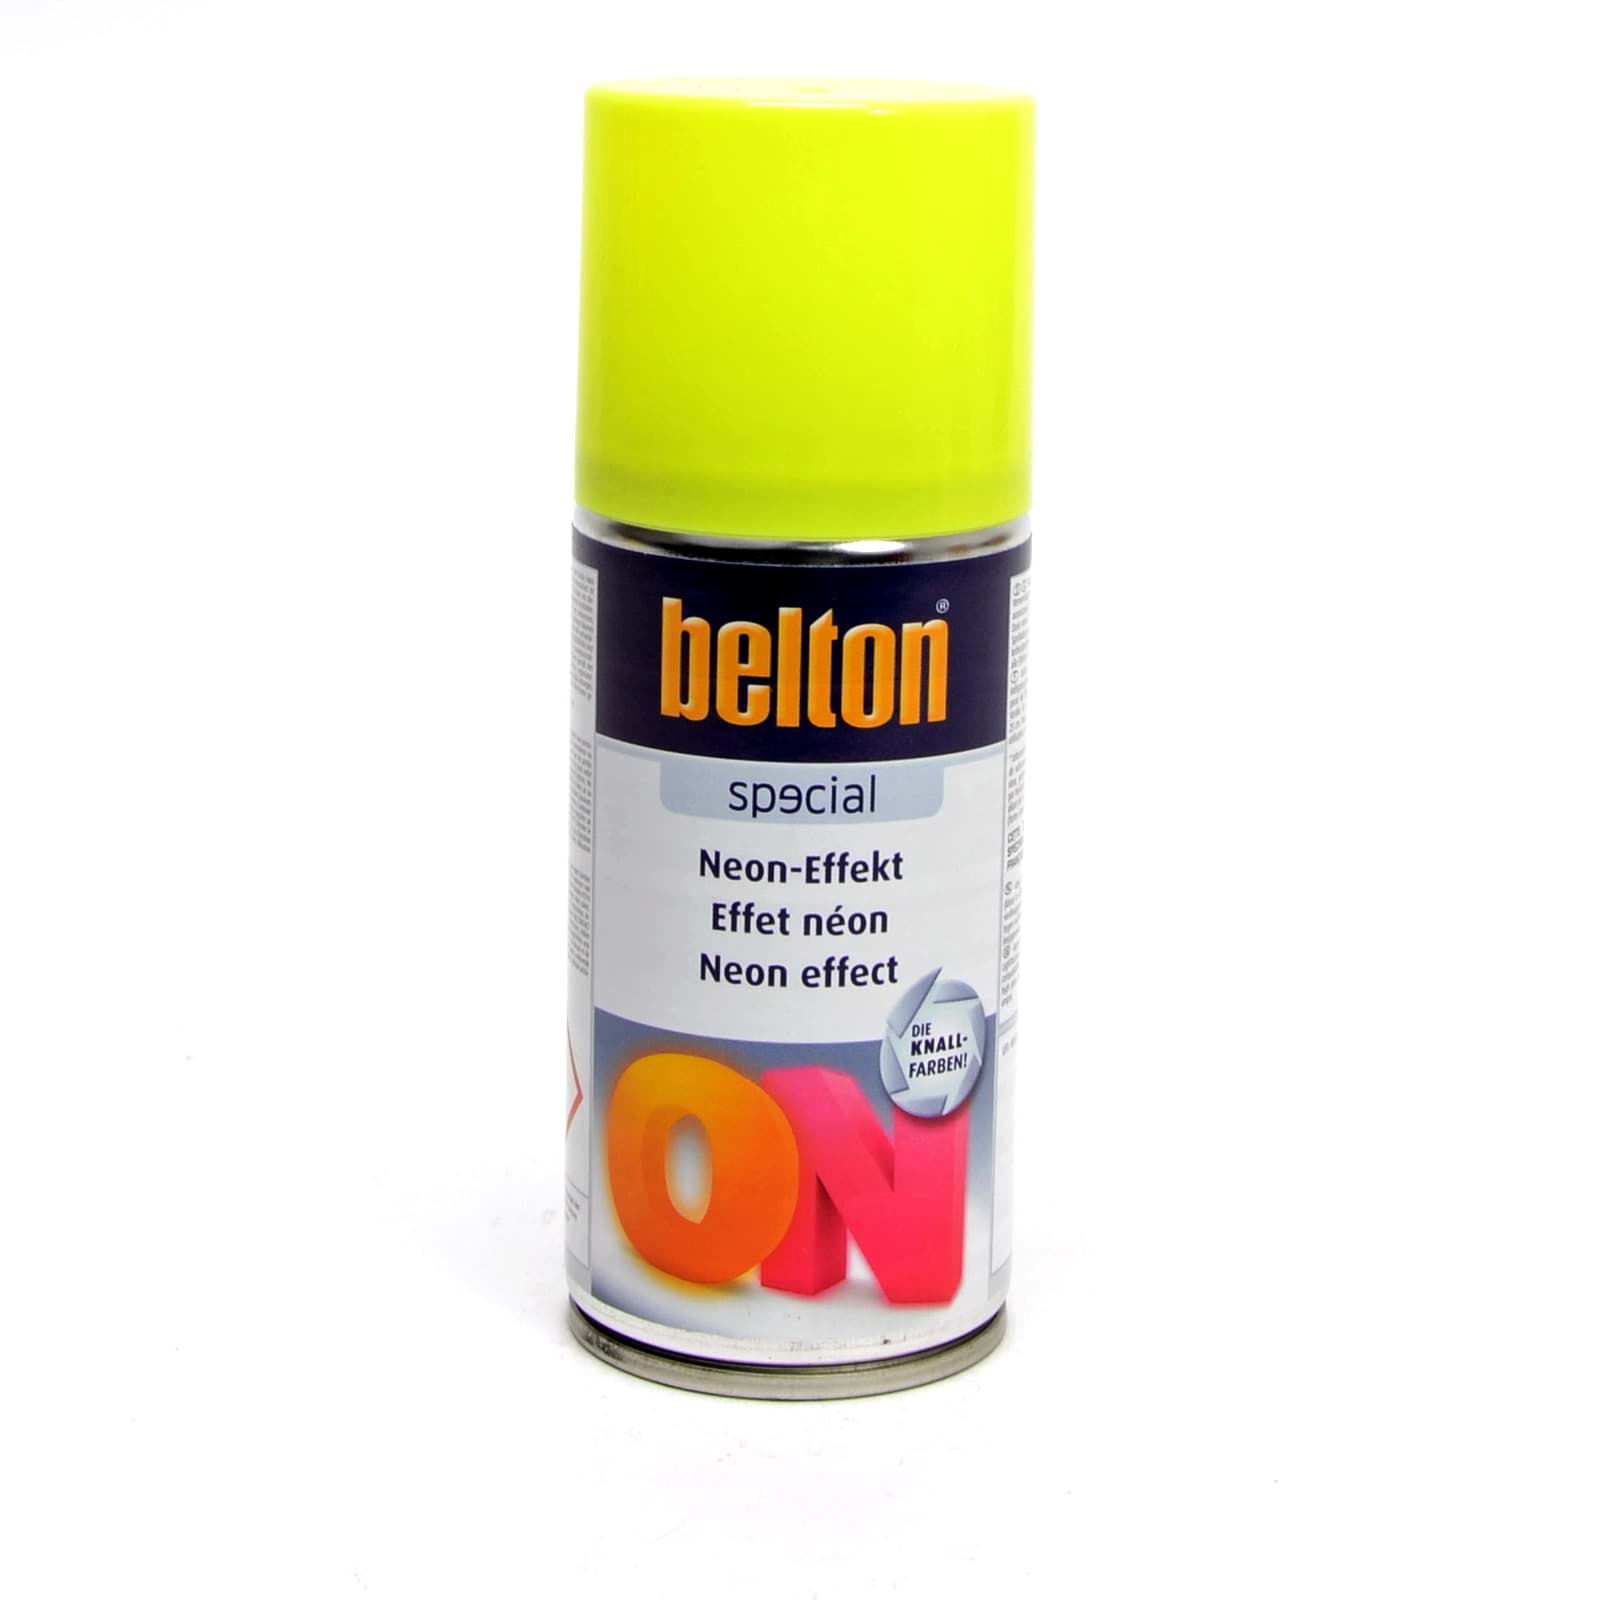 Afbeelding van Belton SPECIAL NEON-EFFEKT Gelb 150ml